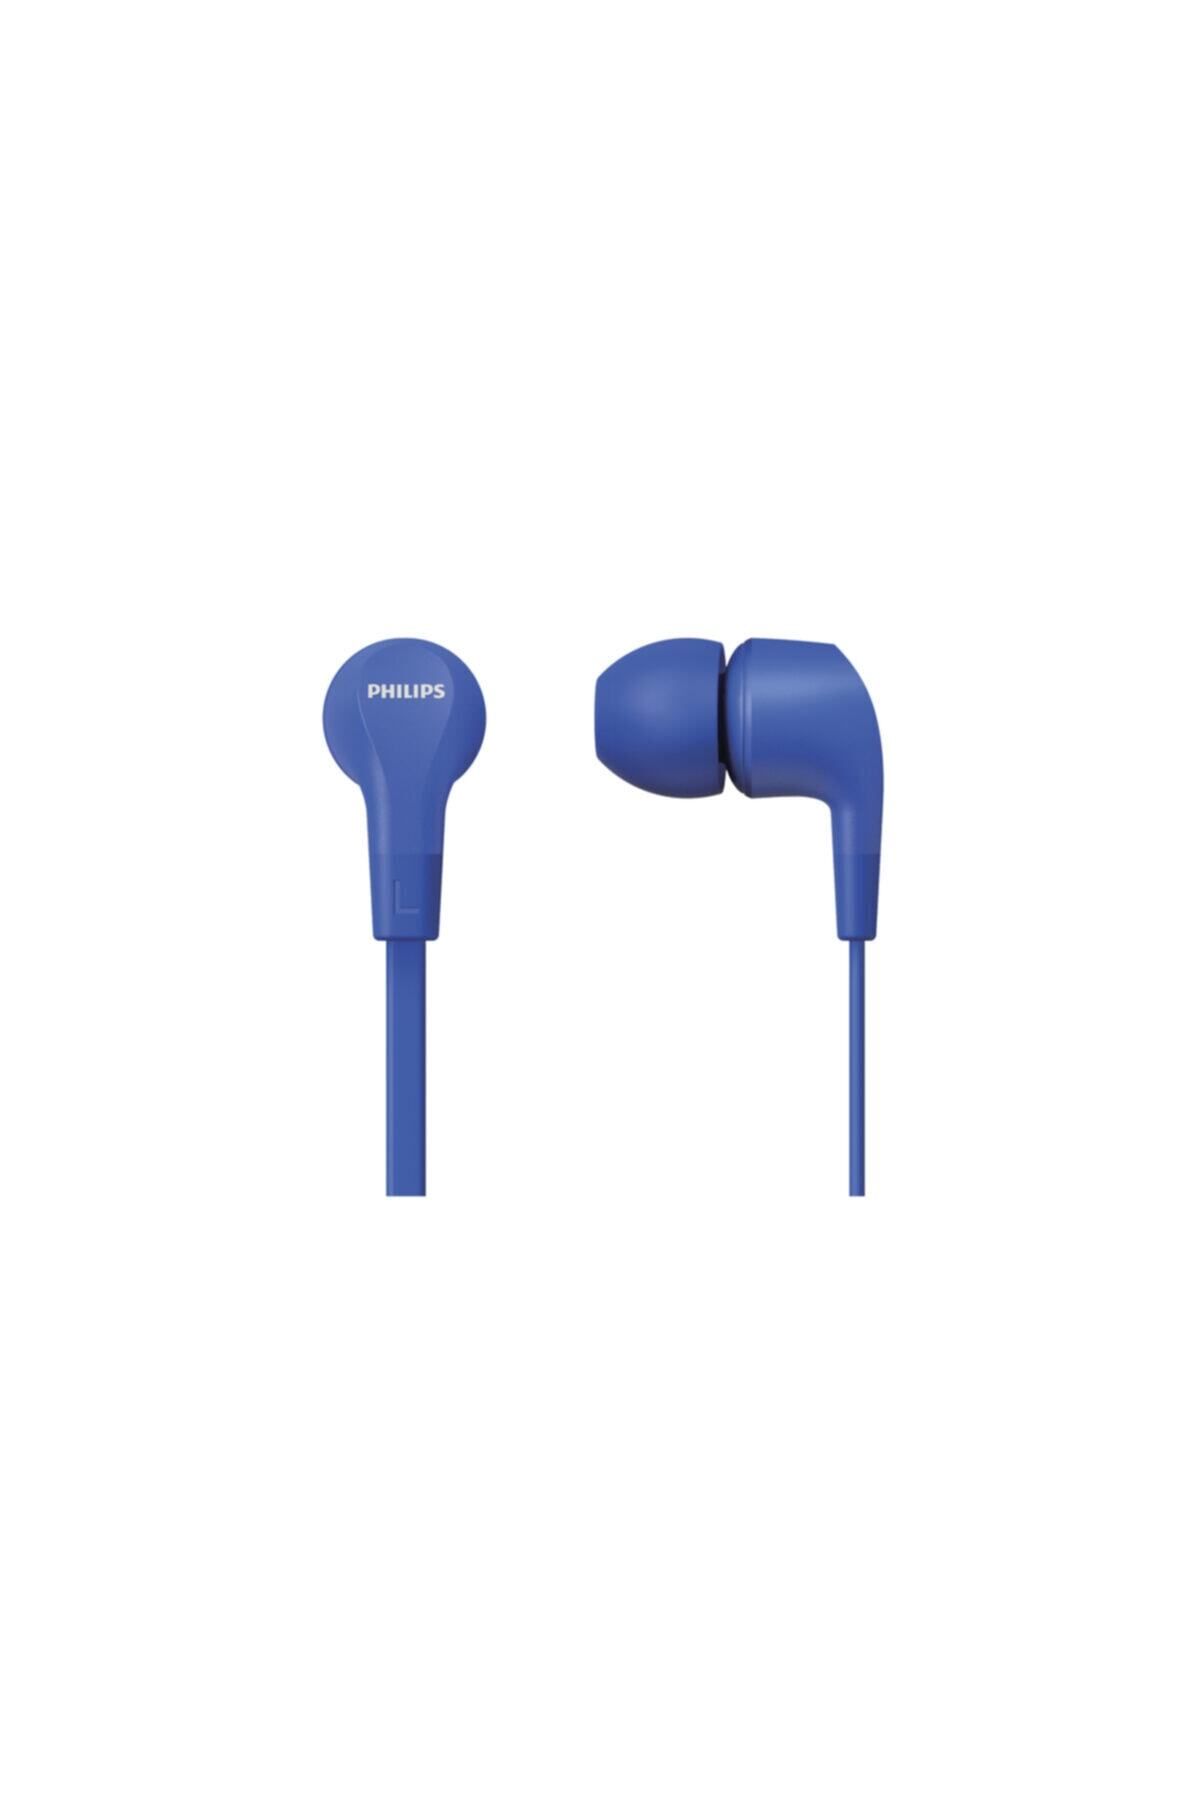 Philips TAE1105 Kablolu Kulak İçi Kulaklık (Mikrofonlu) Mavi